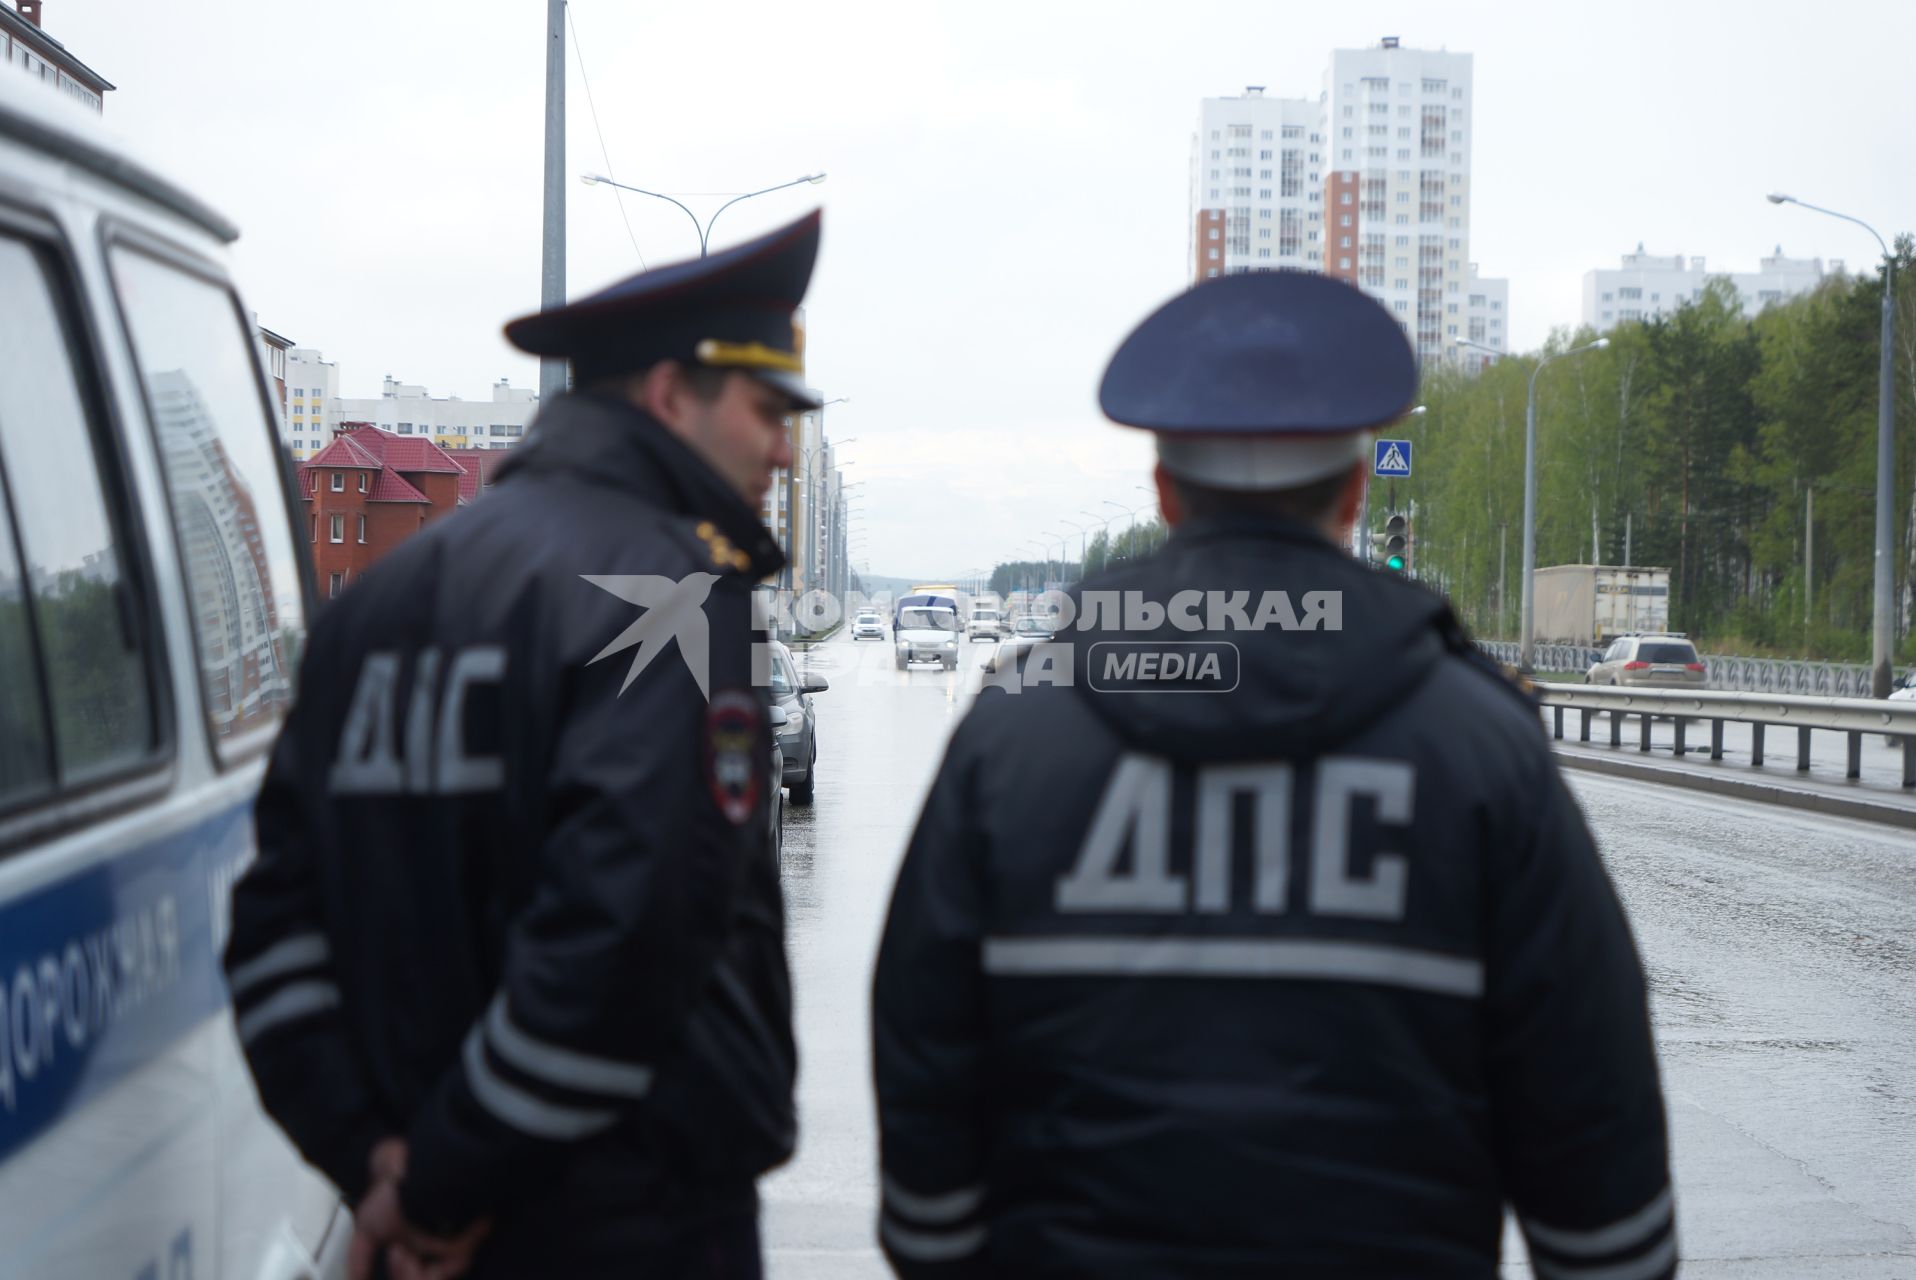 Полицейские ГИБДД у дороги во время рейда. Екатеринбург